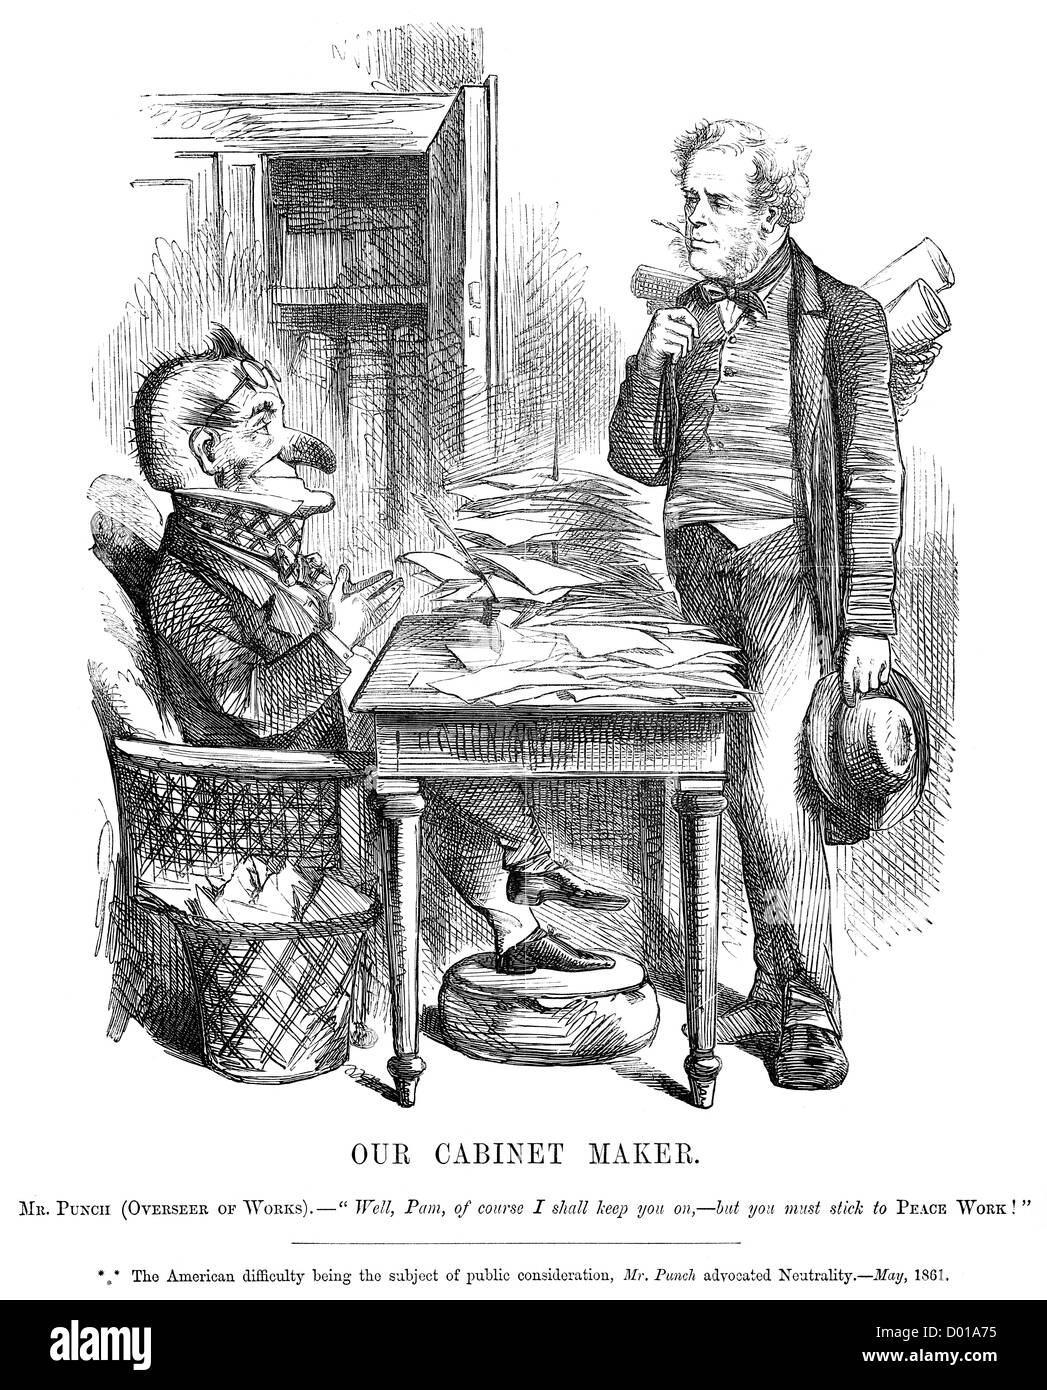 Unsere Tischler. Politische Karikatur über britische Reaktion des amerikanischen Bürgerkrieges, Mai 1861 Stockfoto